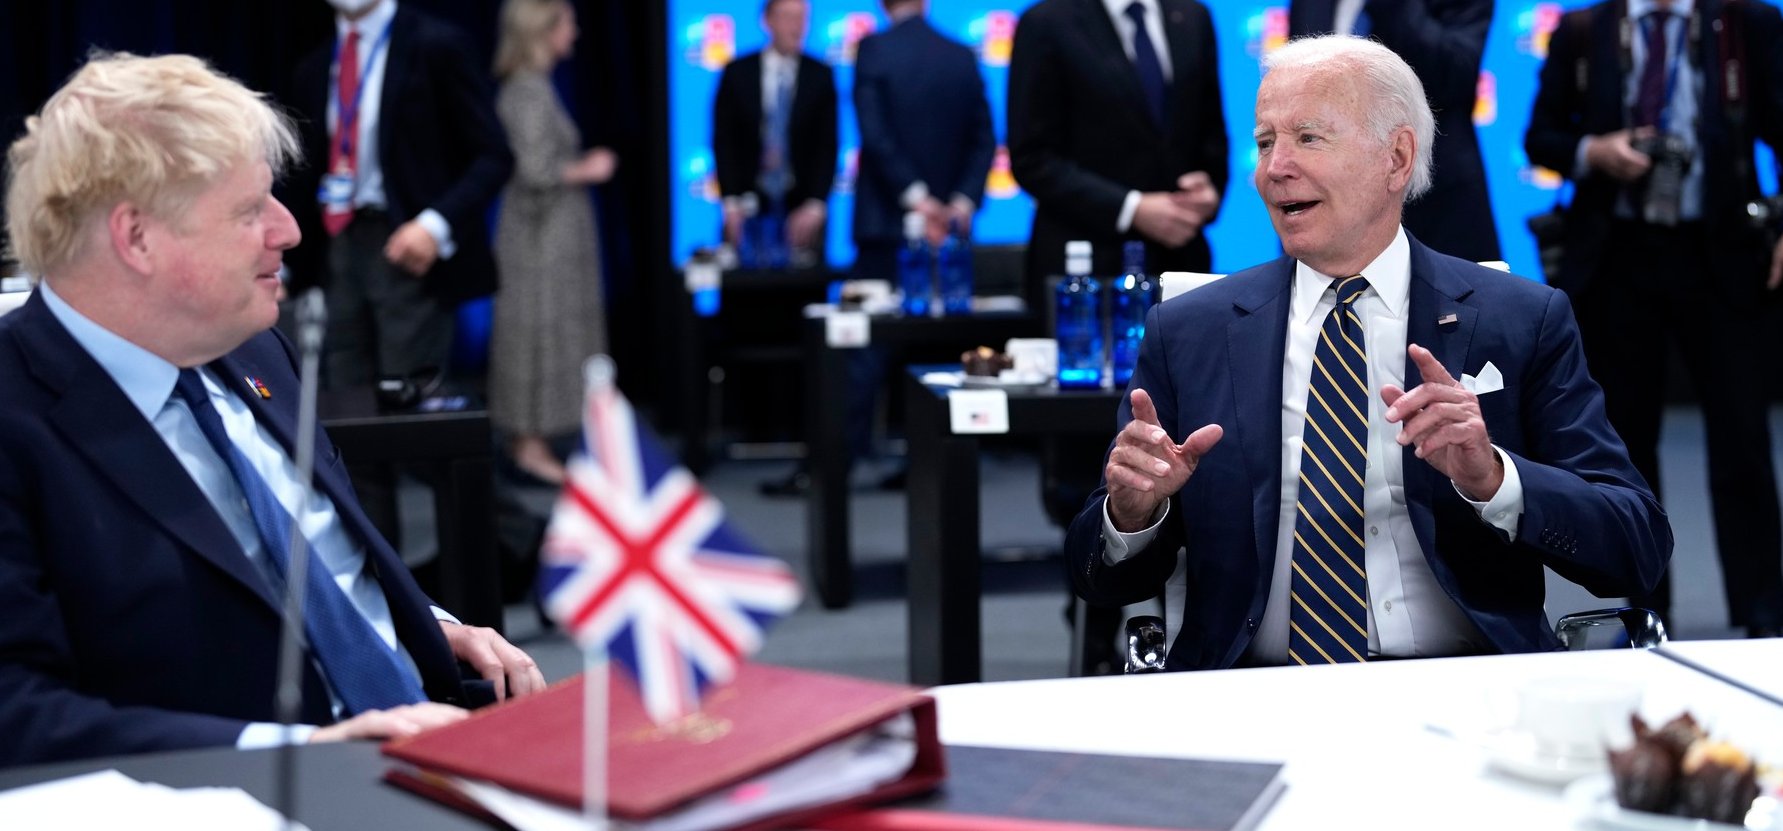 Elképesztő állítások az oroszoktól: a brit miniszterelnököt ők mondatták le, az amerikai elnök pedig haldoklik